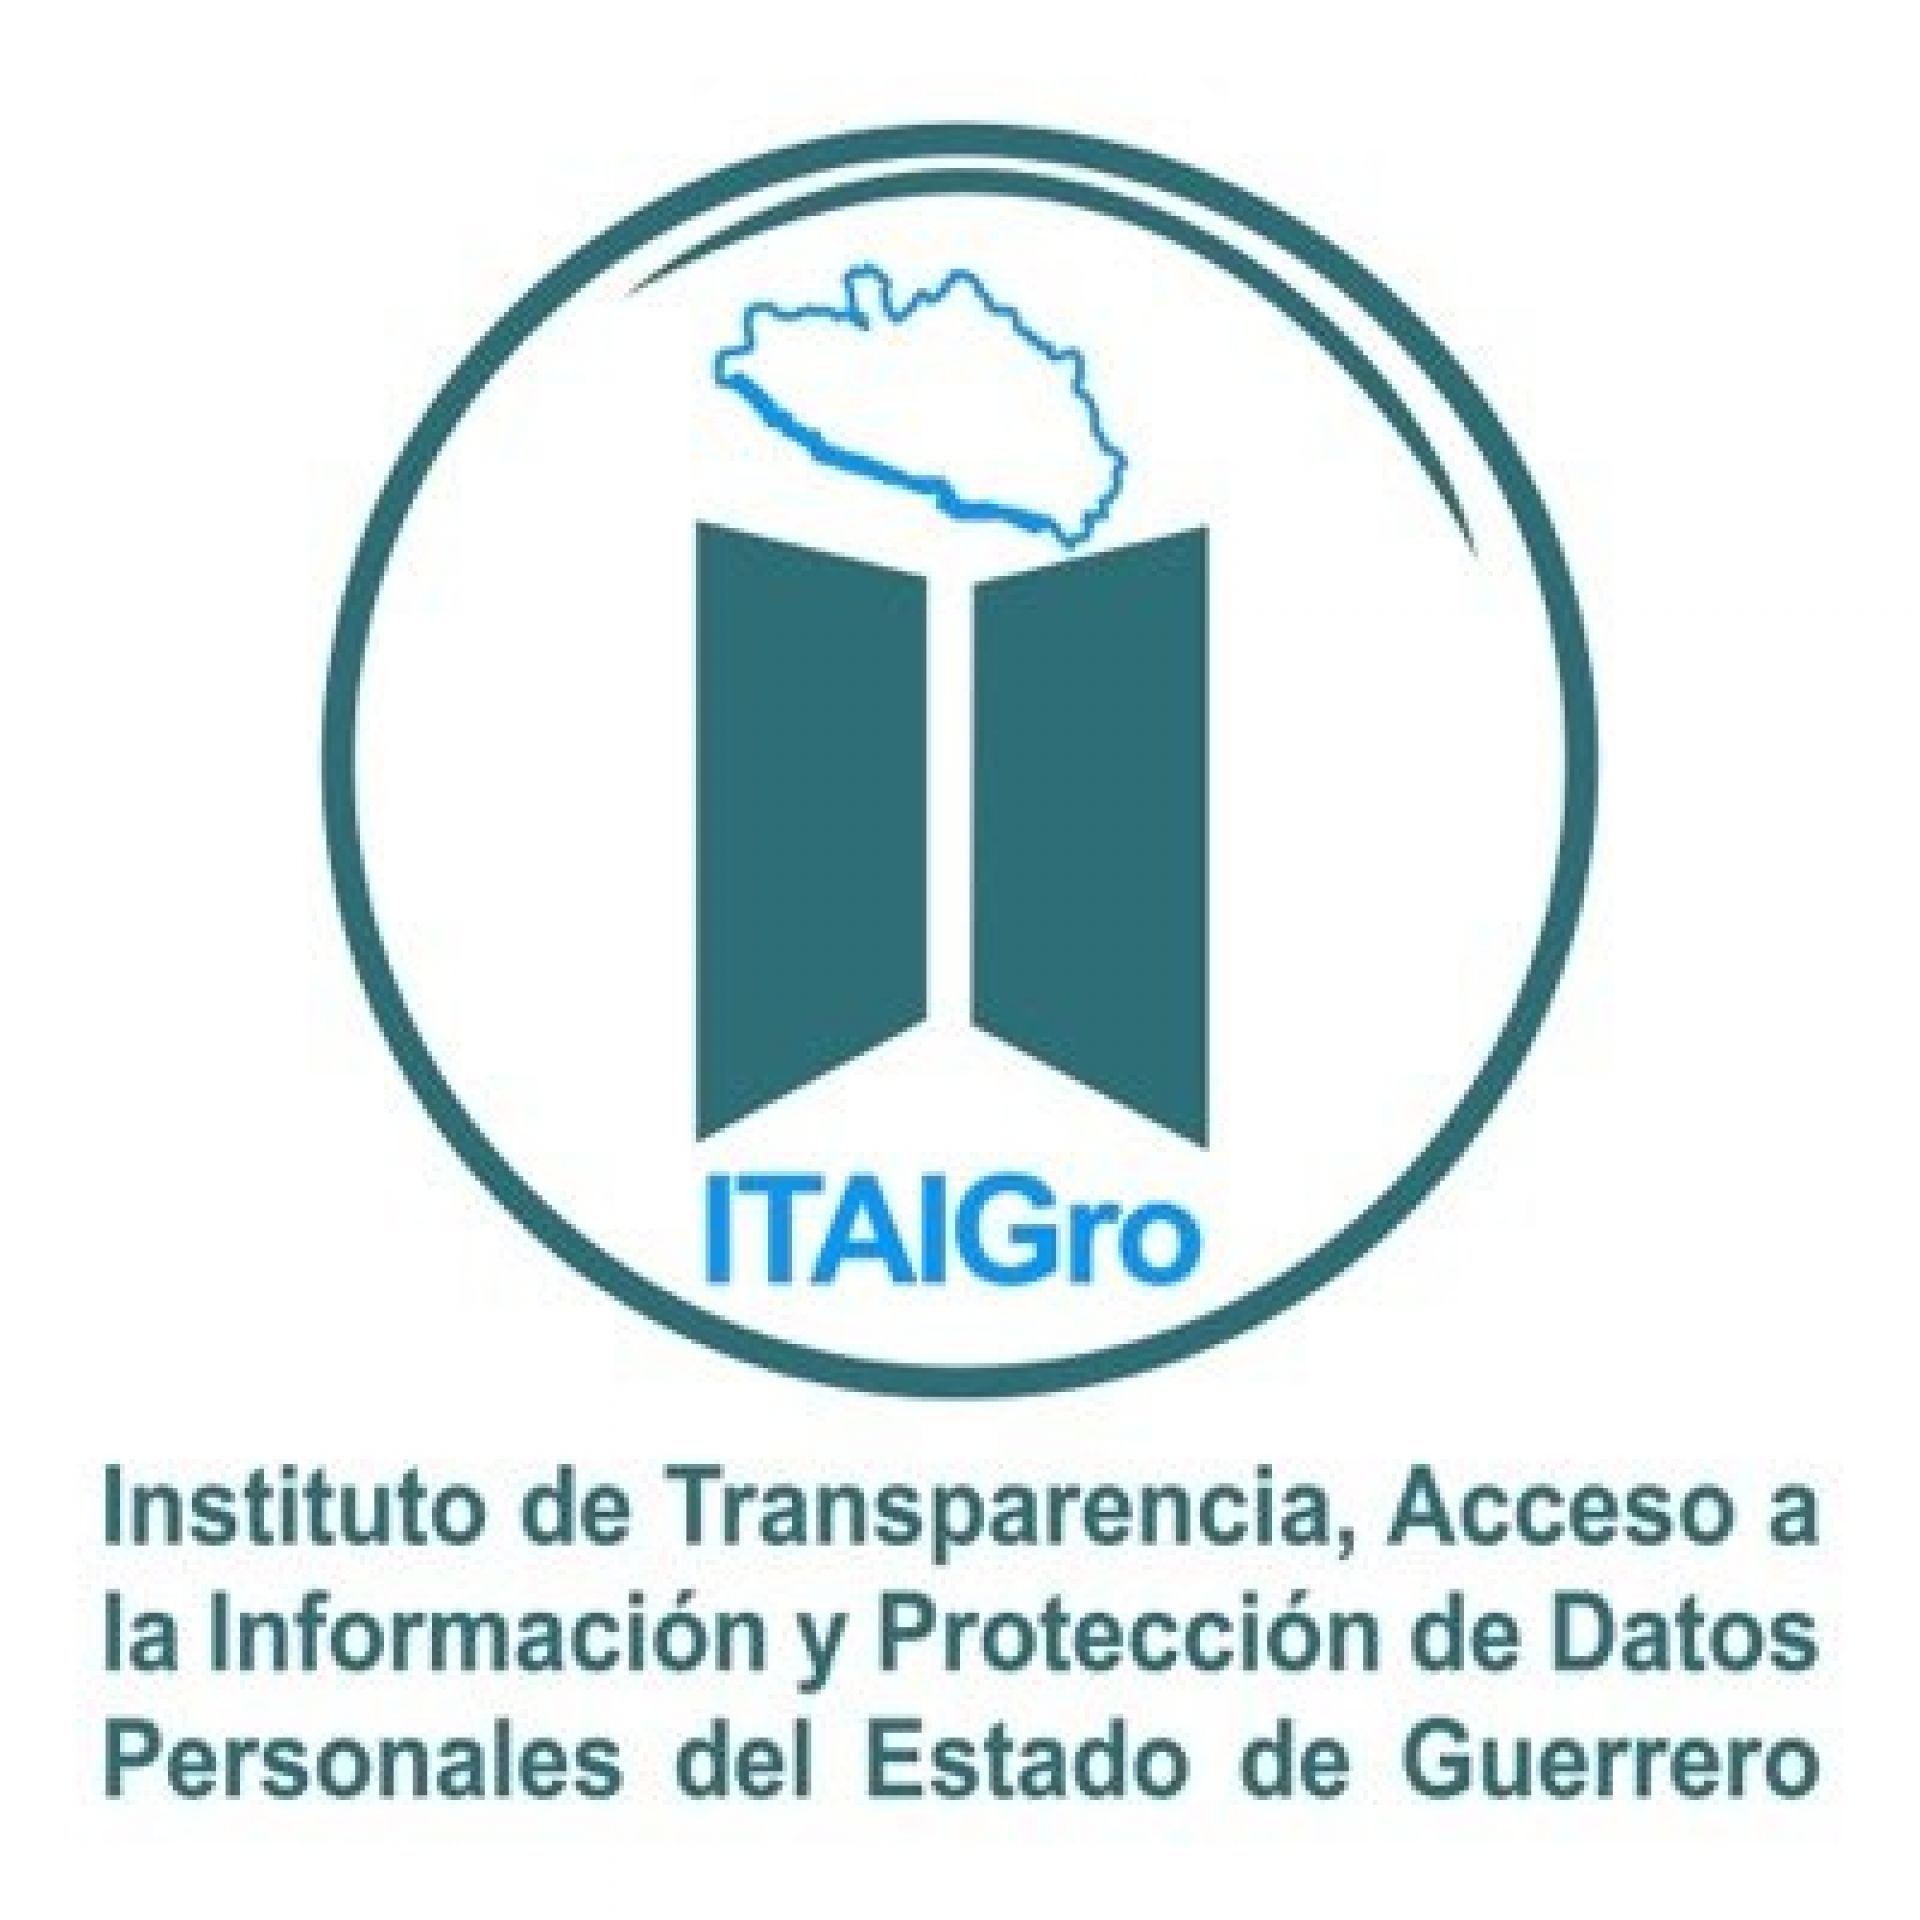 Instituto de Transparencia y Accesso a la Información Pública del Estado de Guerrero